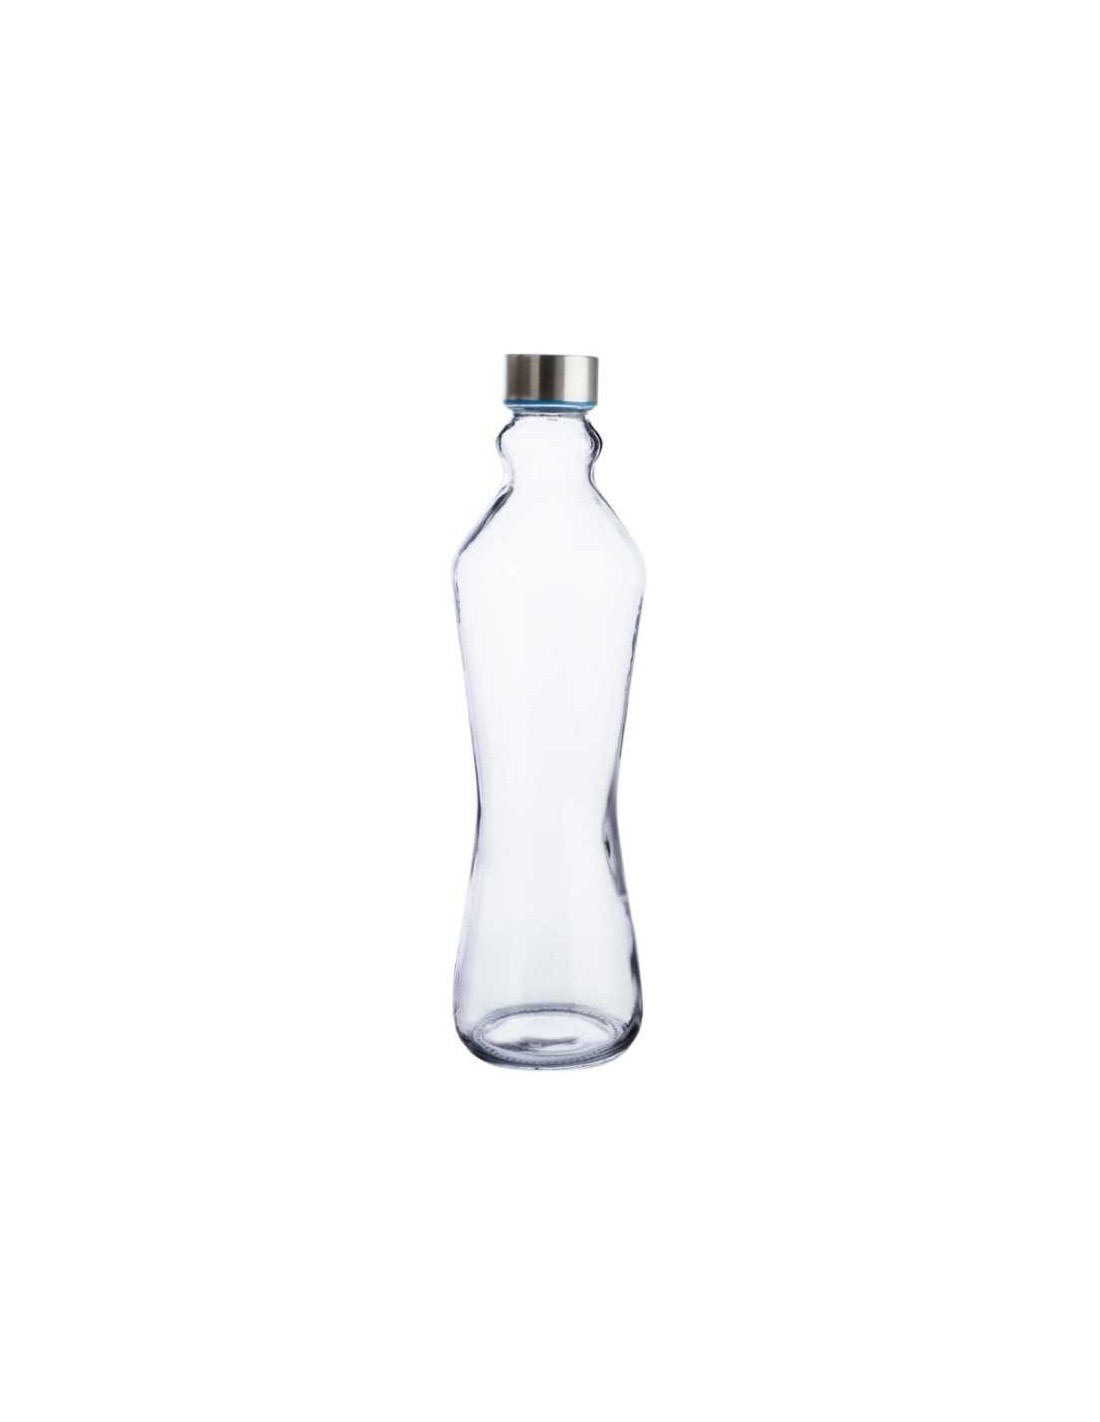 Botella cristal Ancha 1L Tapón Acero Inox., Cocina